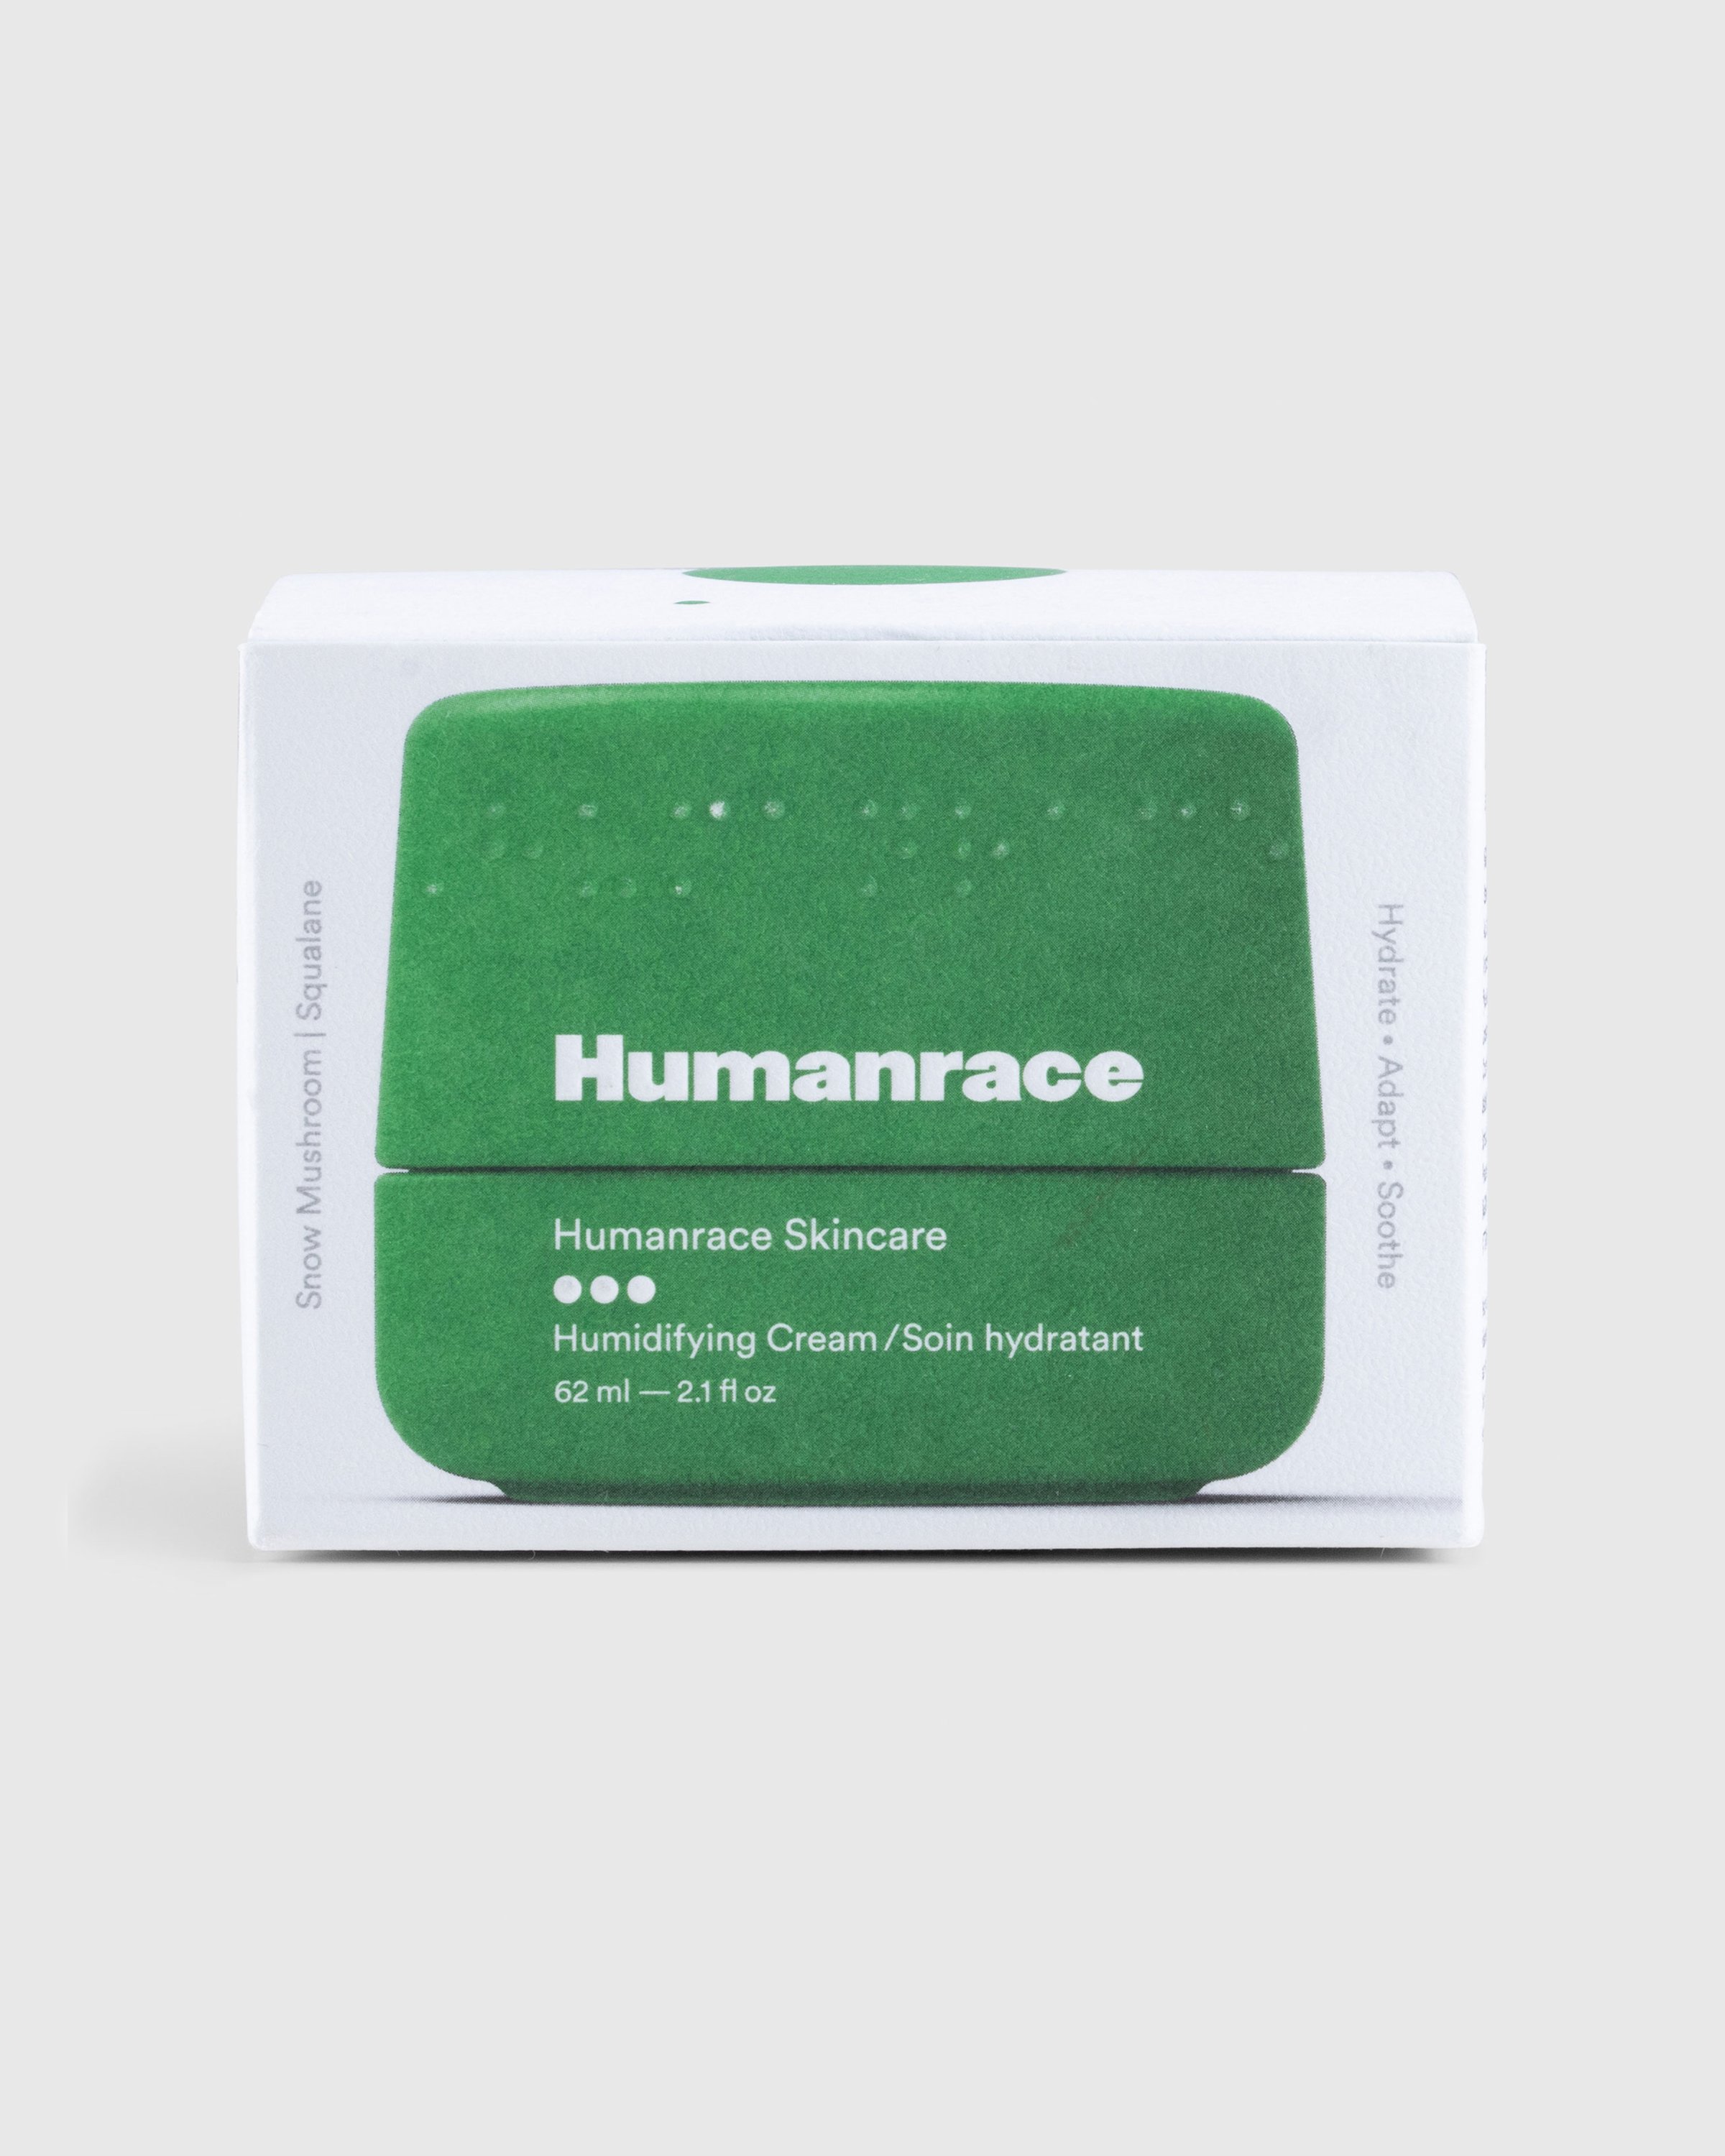 Humanrace - Humidifying Face Cream - Lifestyle - Green - Image 2